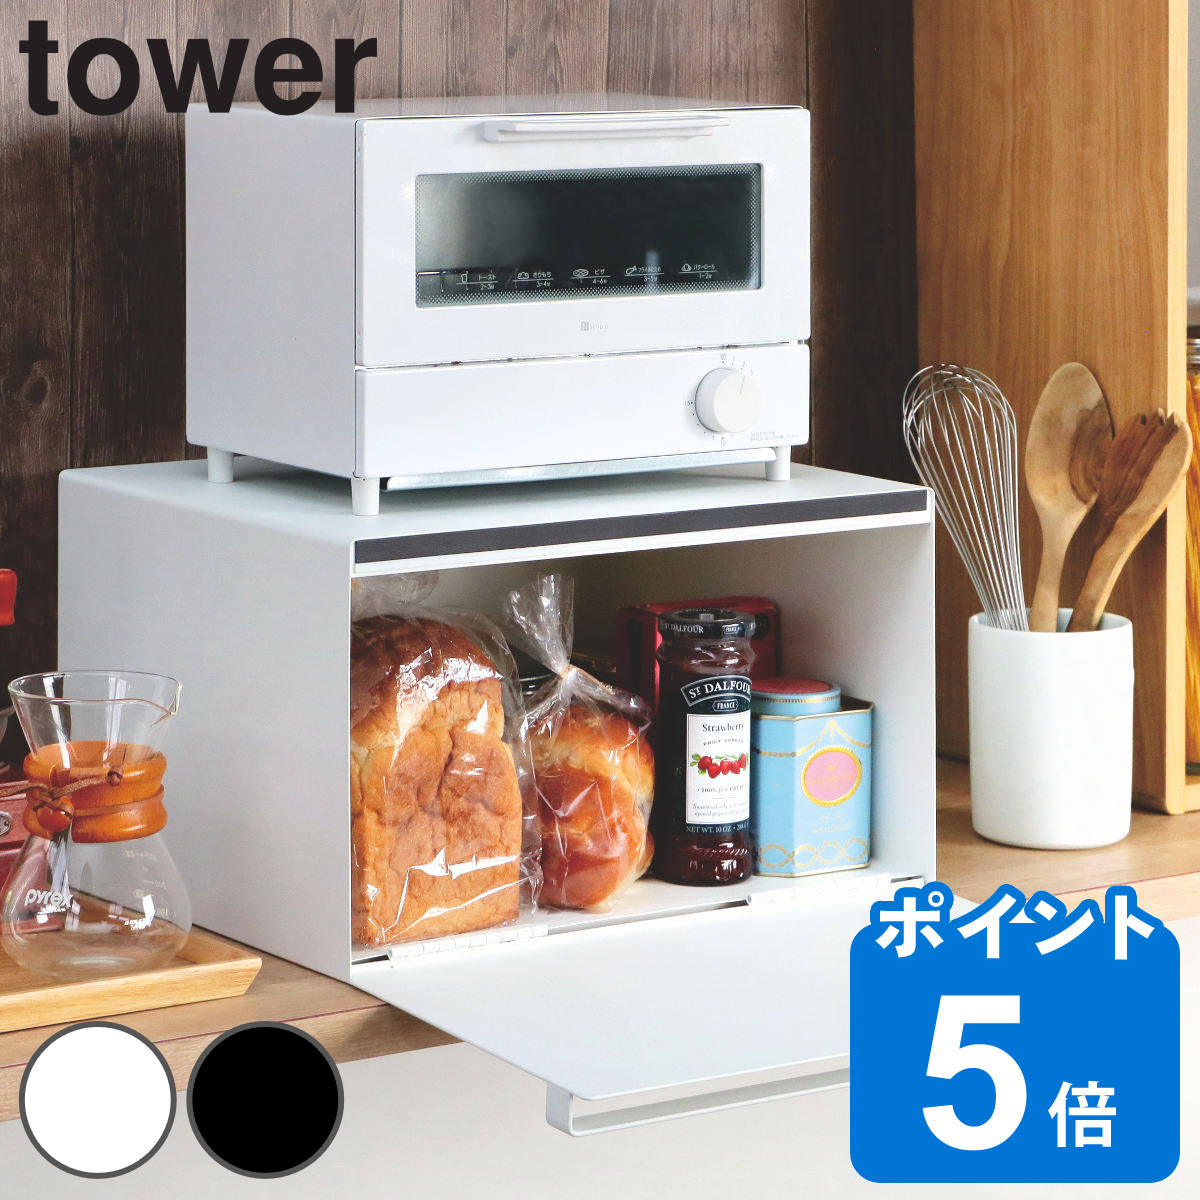 山崎実業 tower ブレッドケース タワー